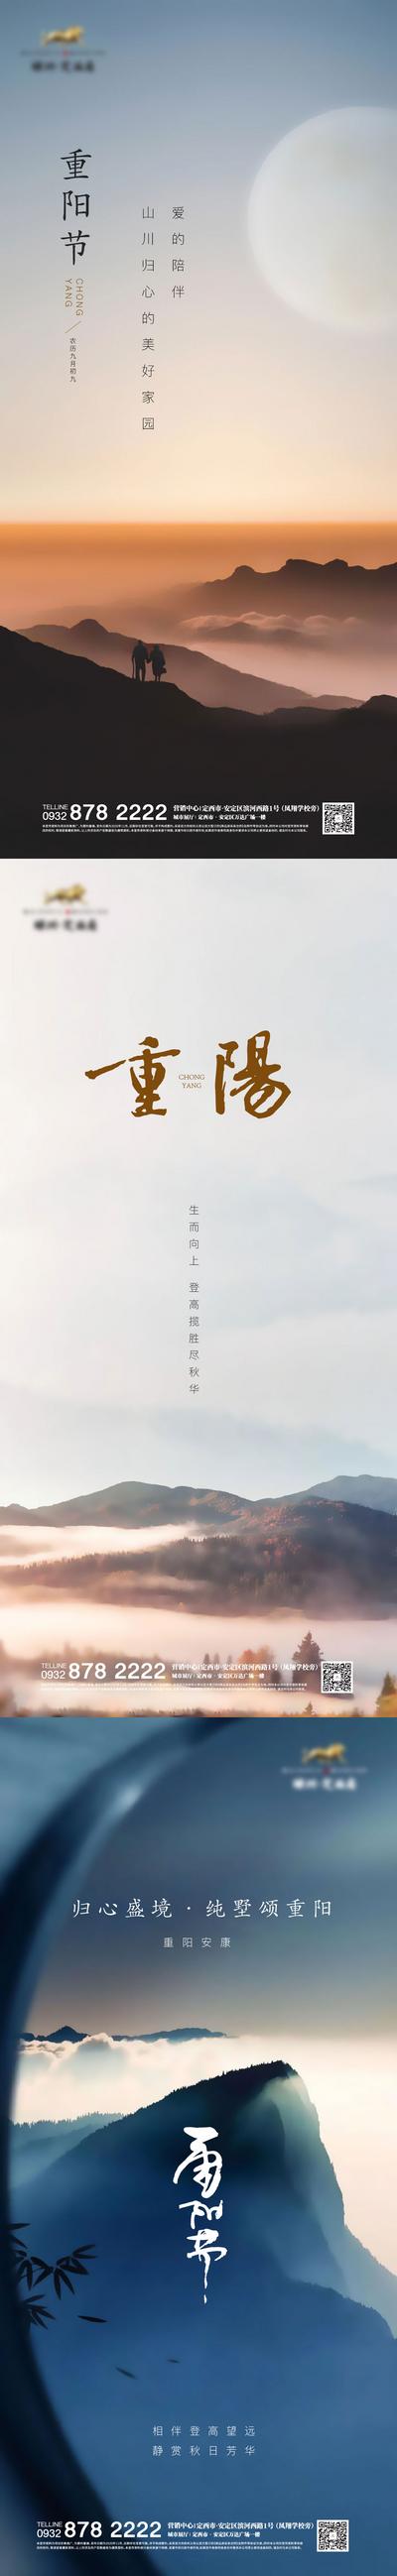 南门网 重阳节系列海报